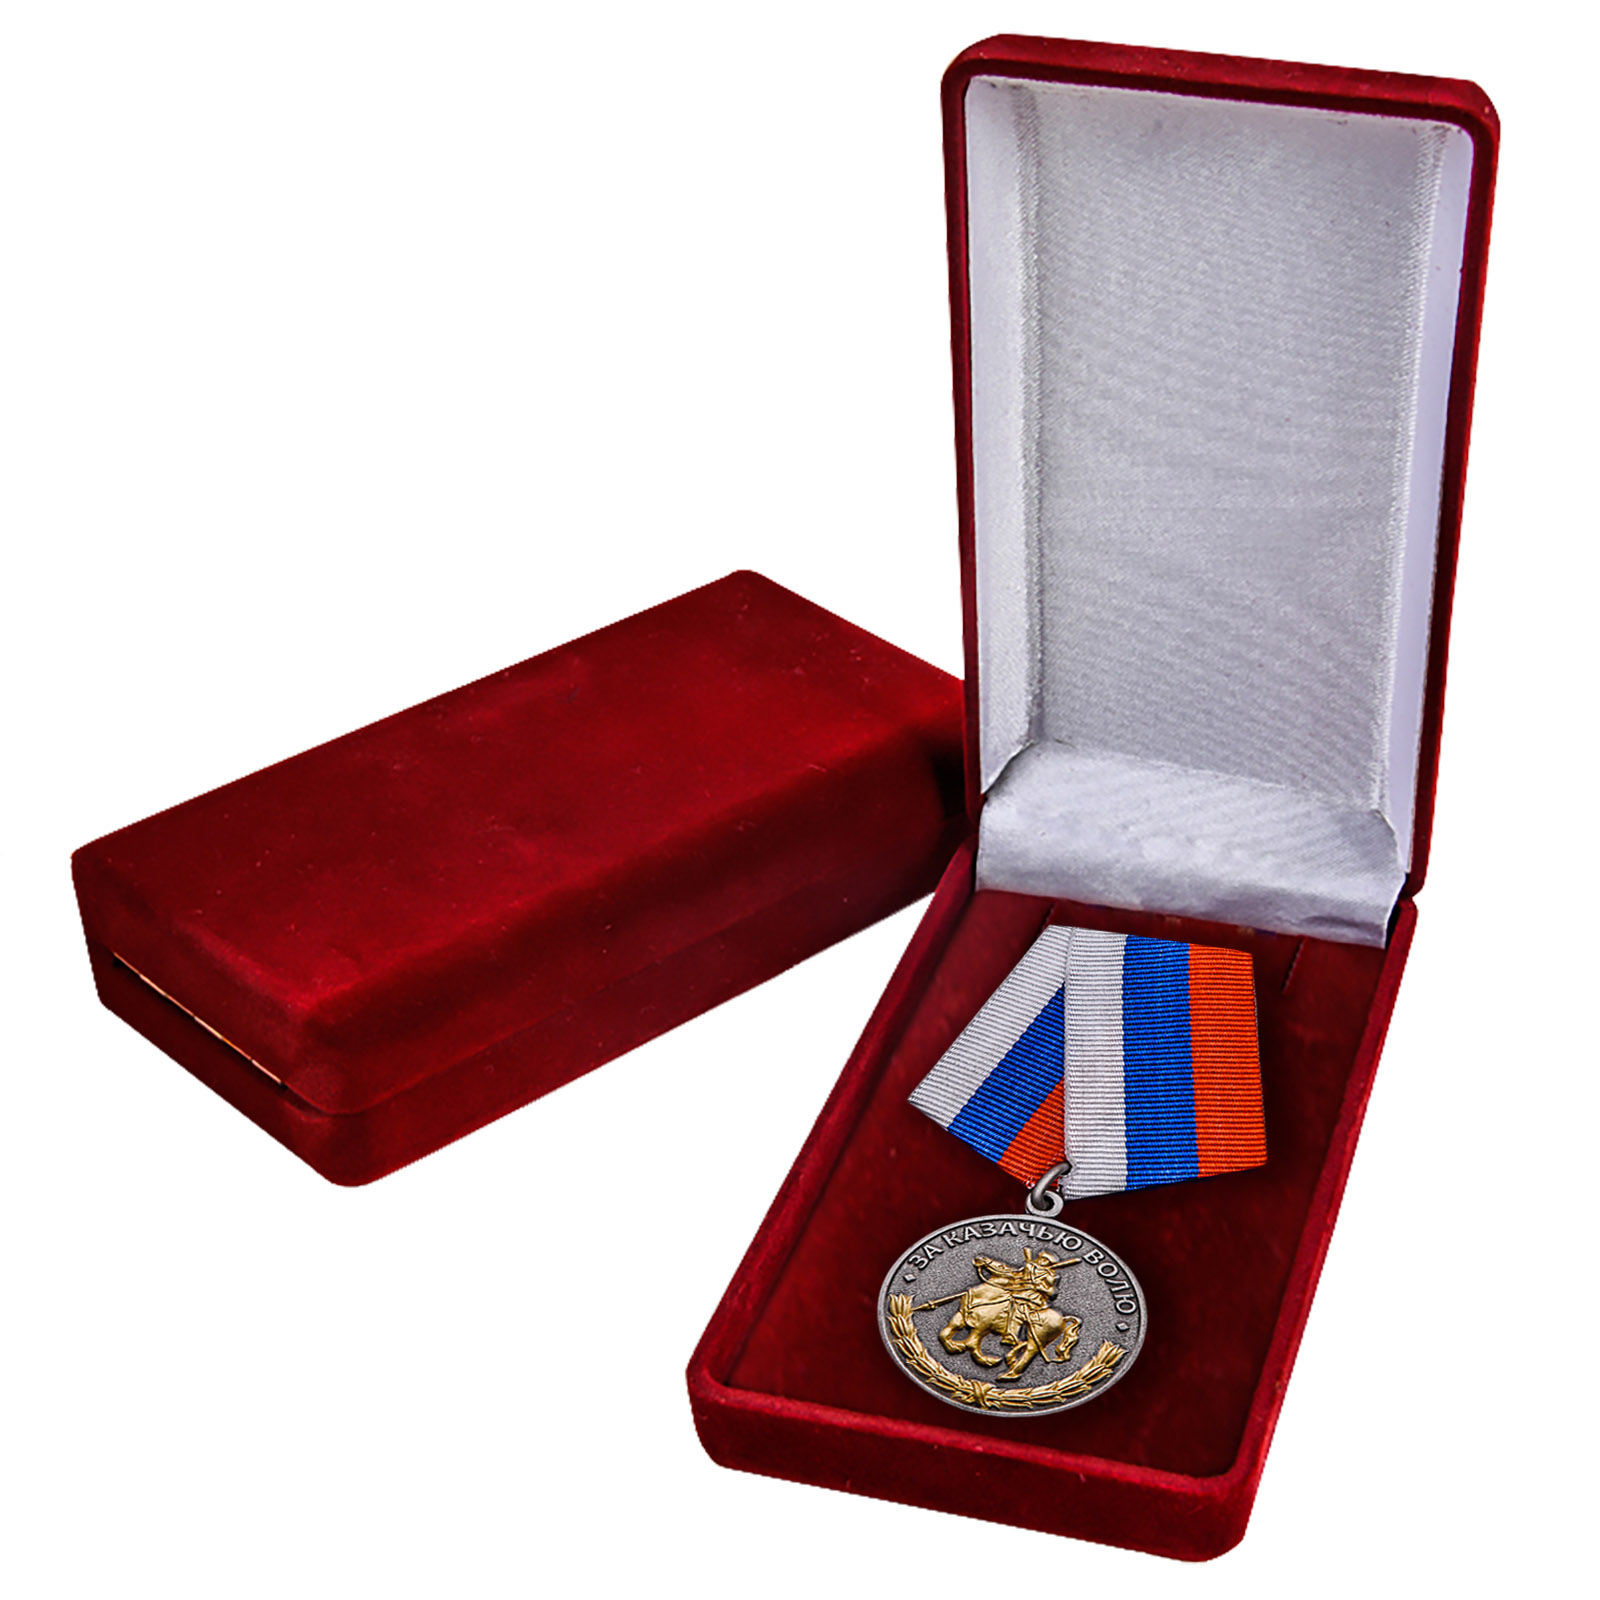 Медаль "За казачью волю" 